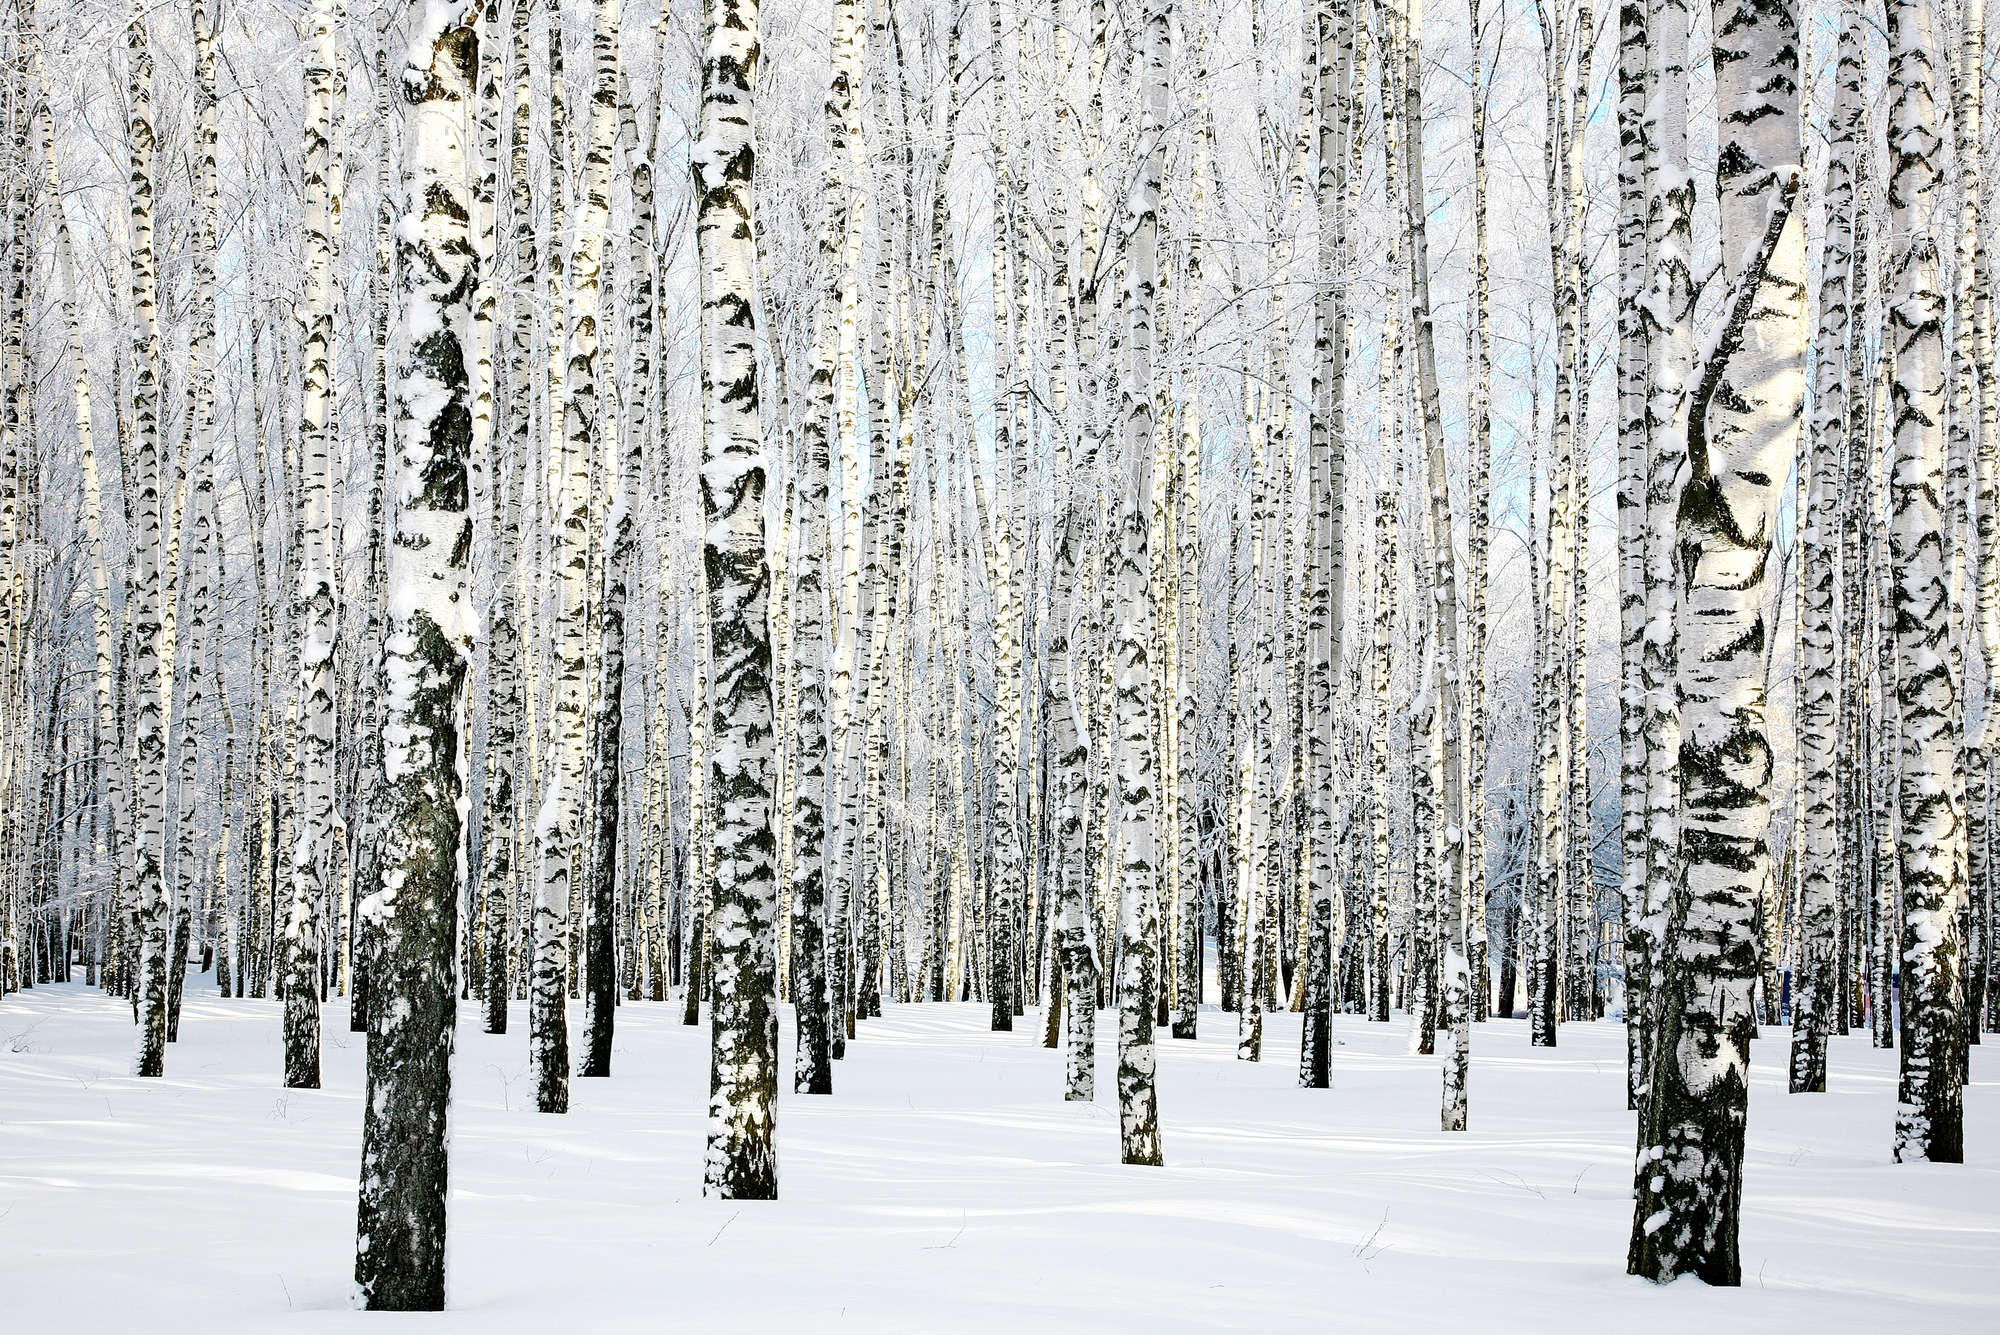             Papel pintado de naturaleza Bosque de abedules en invierno sobre lana de alta calidad
        